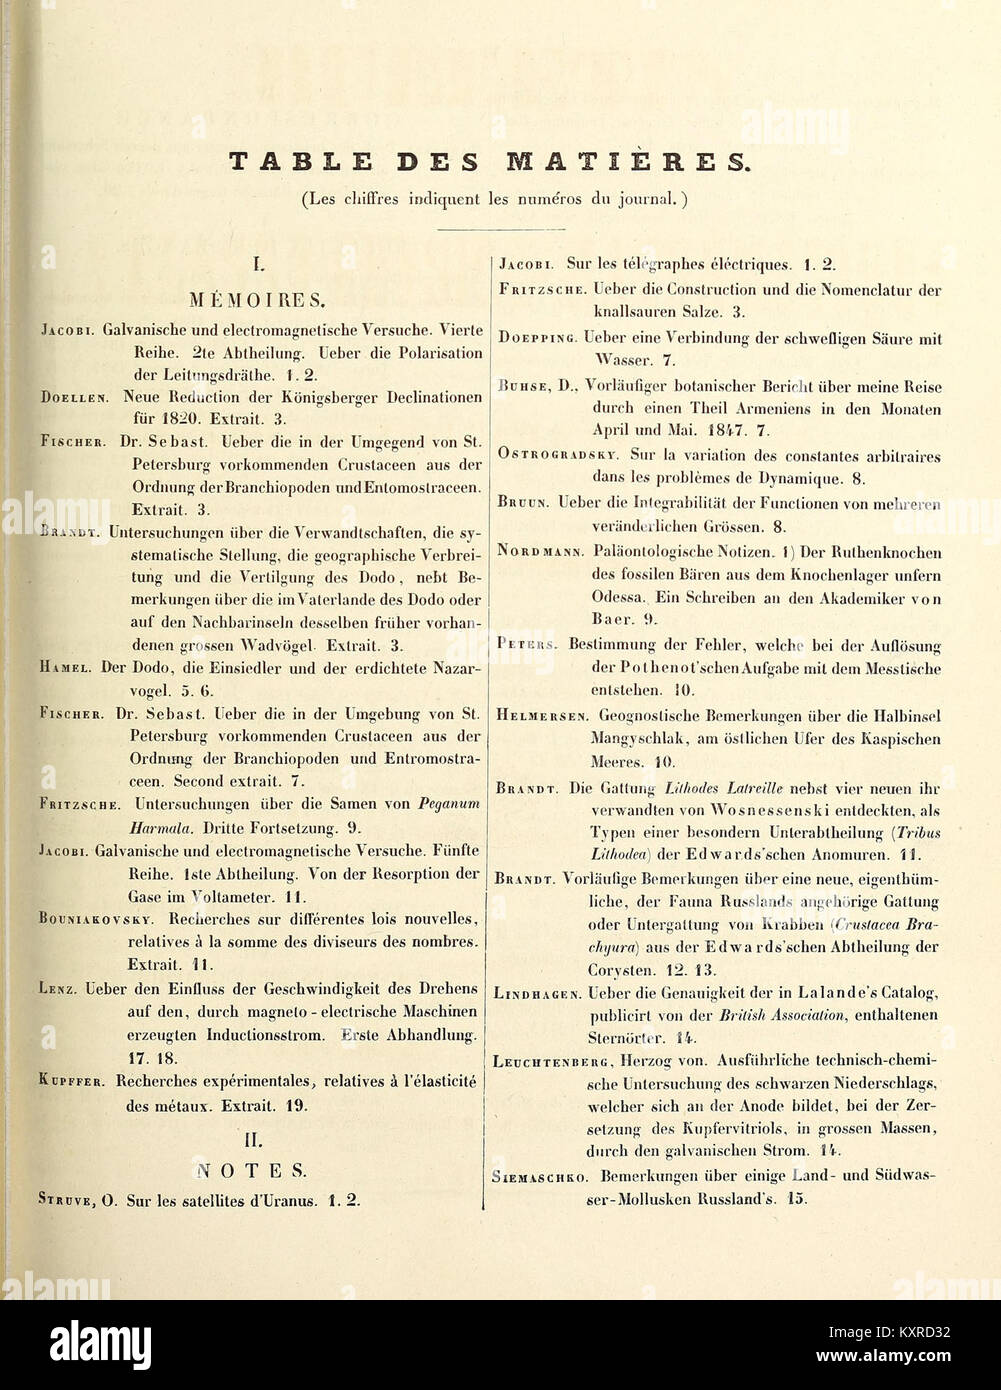 Bulletin de la Classe physico-mathématique de l'Académie impériale des sciences de Saint-Pétersbourg BHL45977247 Stock Photo